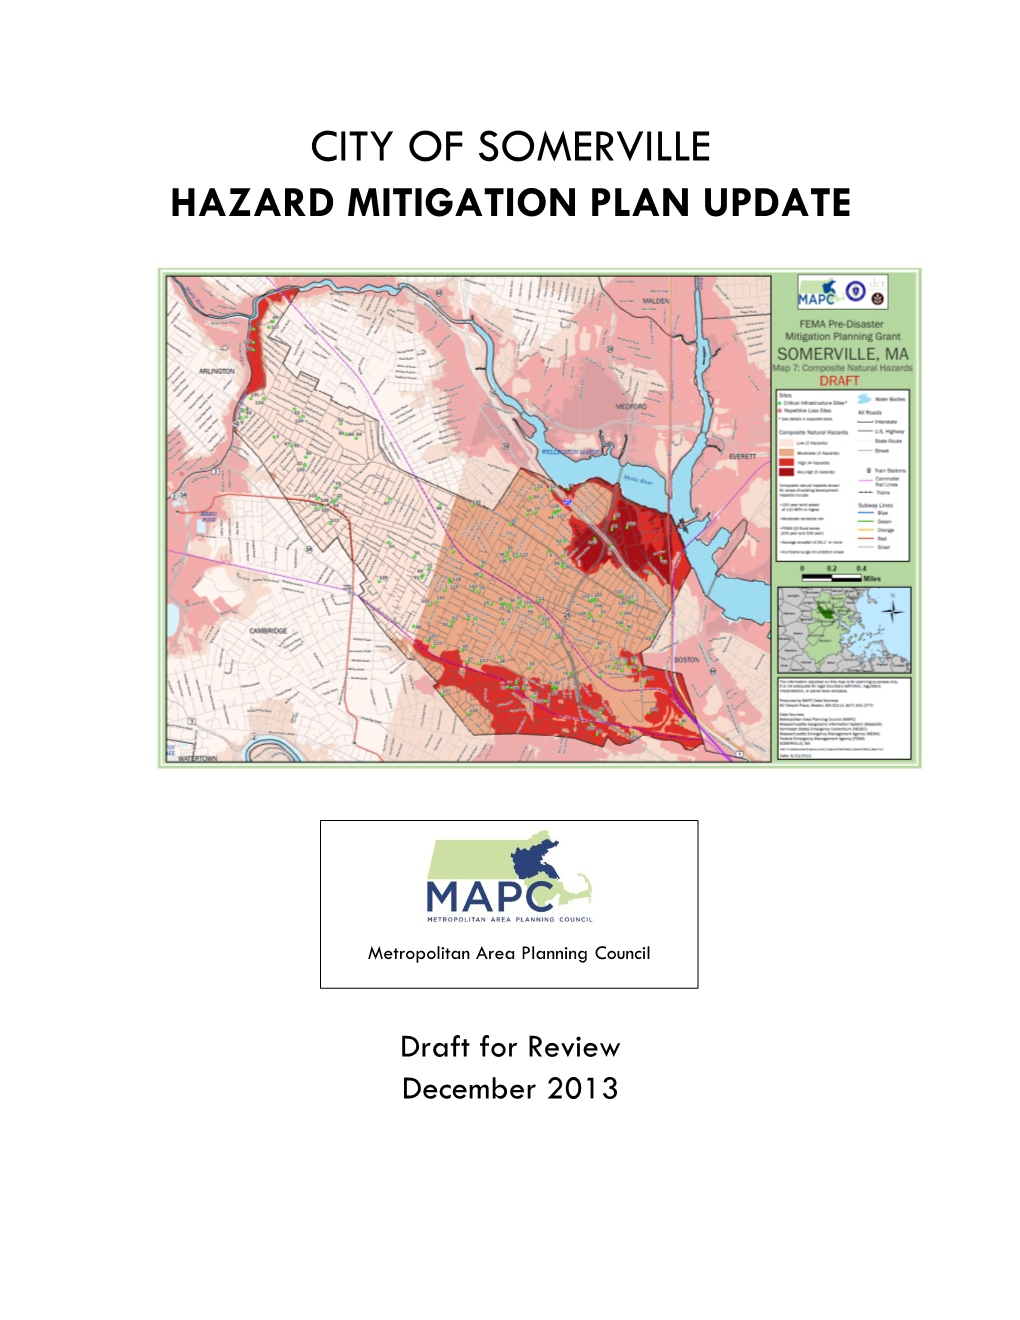 Hazard Mitigation Plan Update